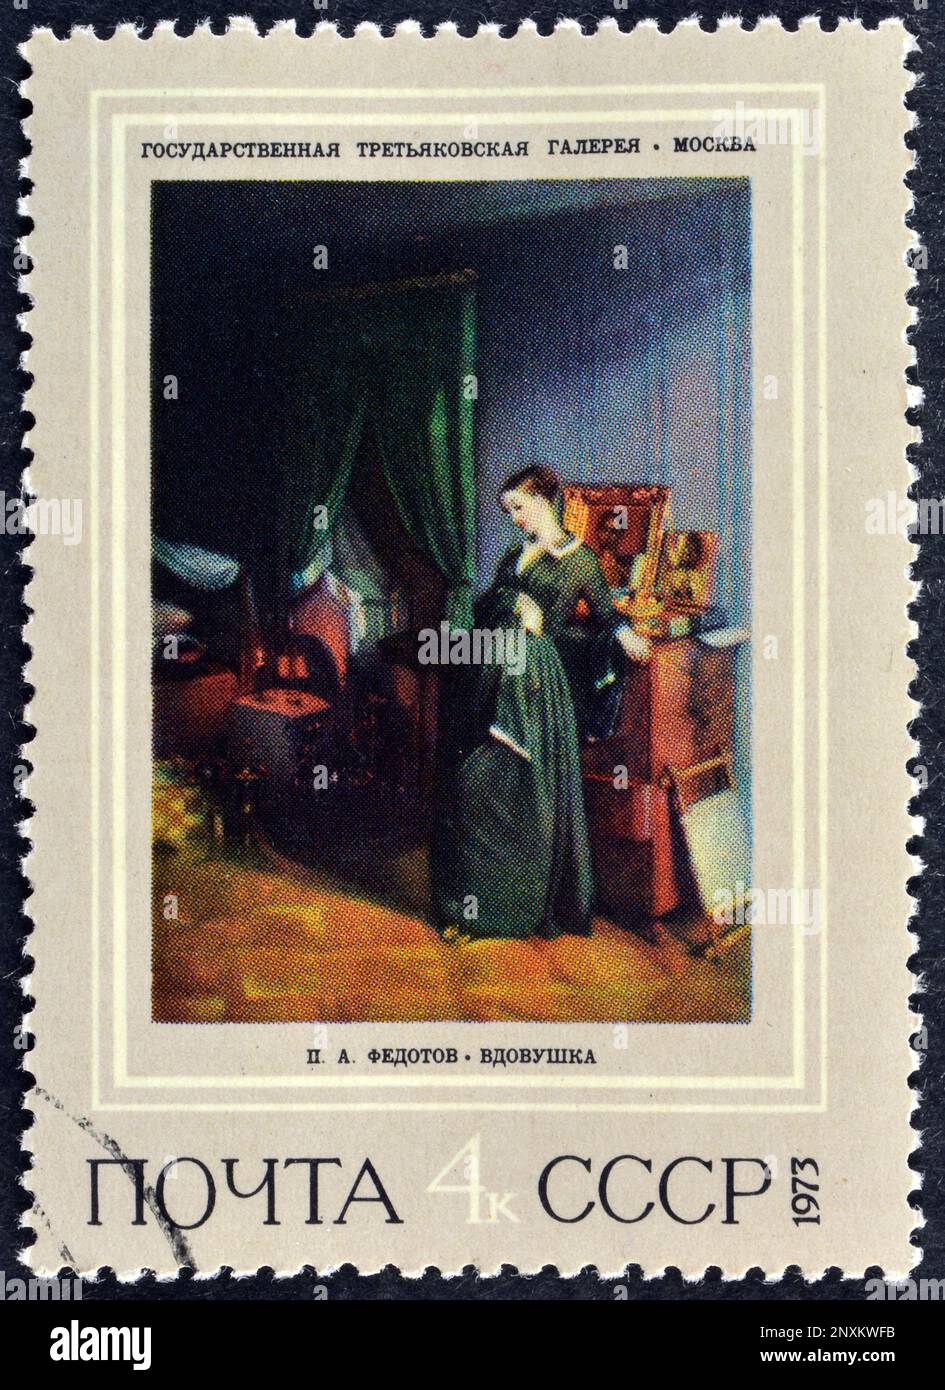 Timbre-poste annulé imprimé par l'URSS, qui montre la peinture de la veuve, Pavel Fedotov (1851), 19th peintures russes du siècle, vers 1973. Banque D'Images